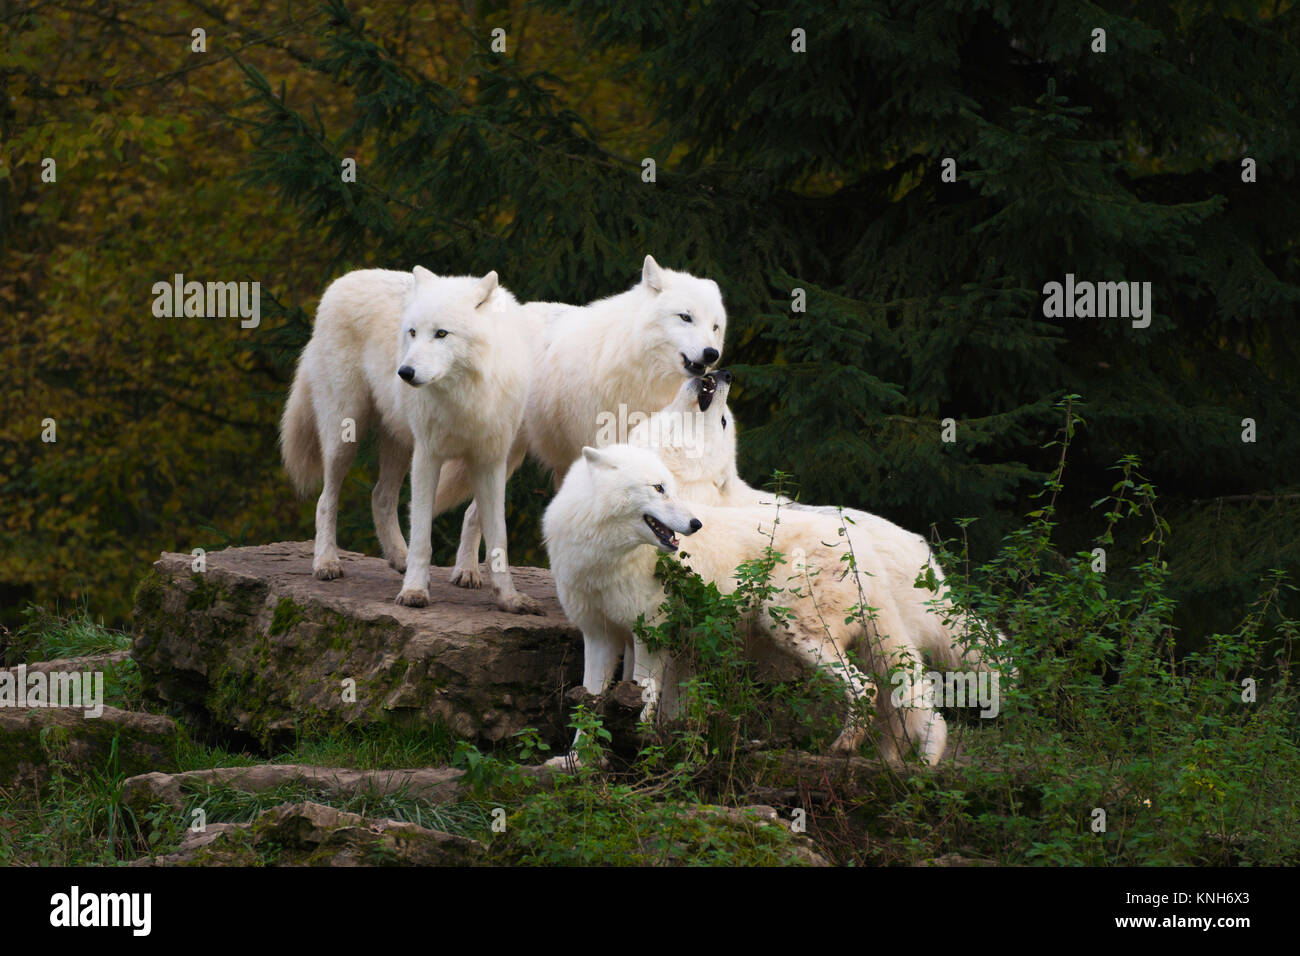 Quatre loups arctiques se tenant ensemble sur un rocher devant un hurlement social - Canis lupus arctos Banque D'Images